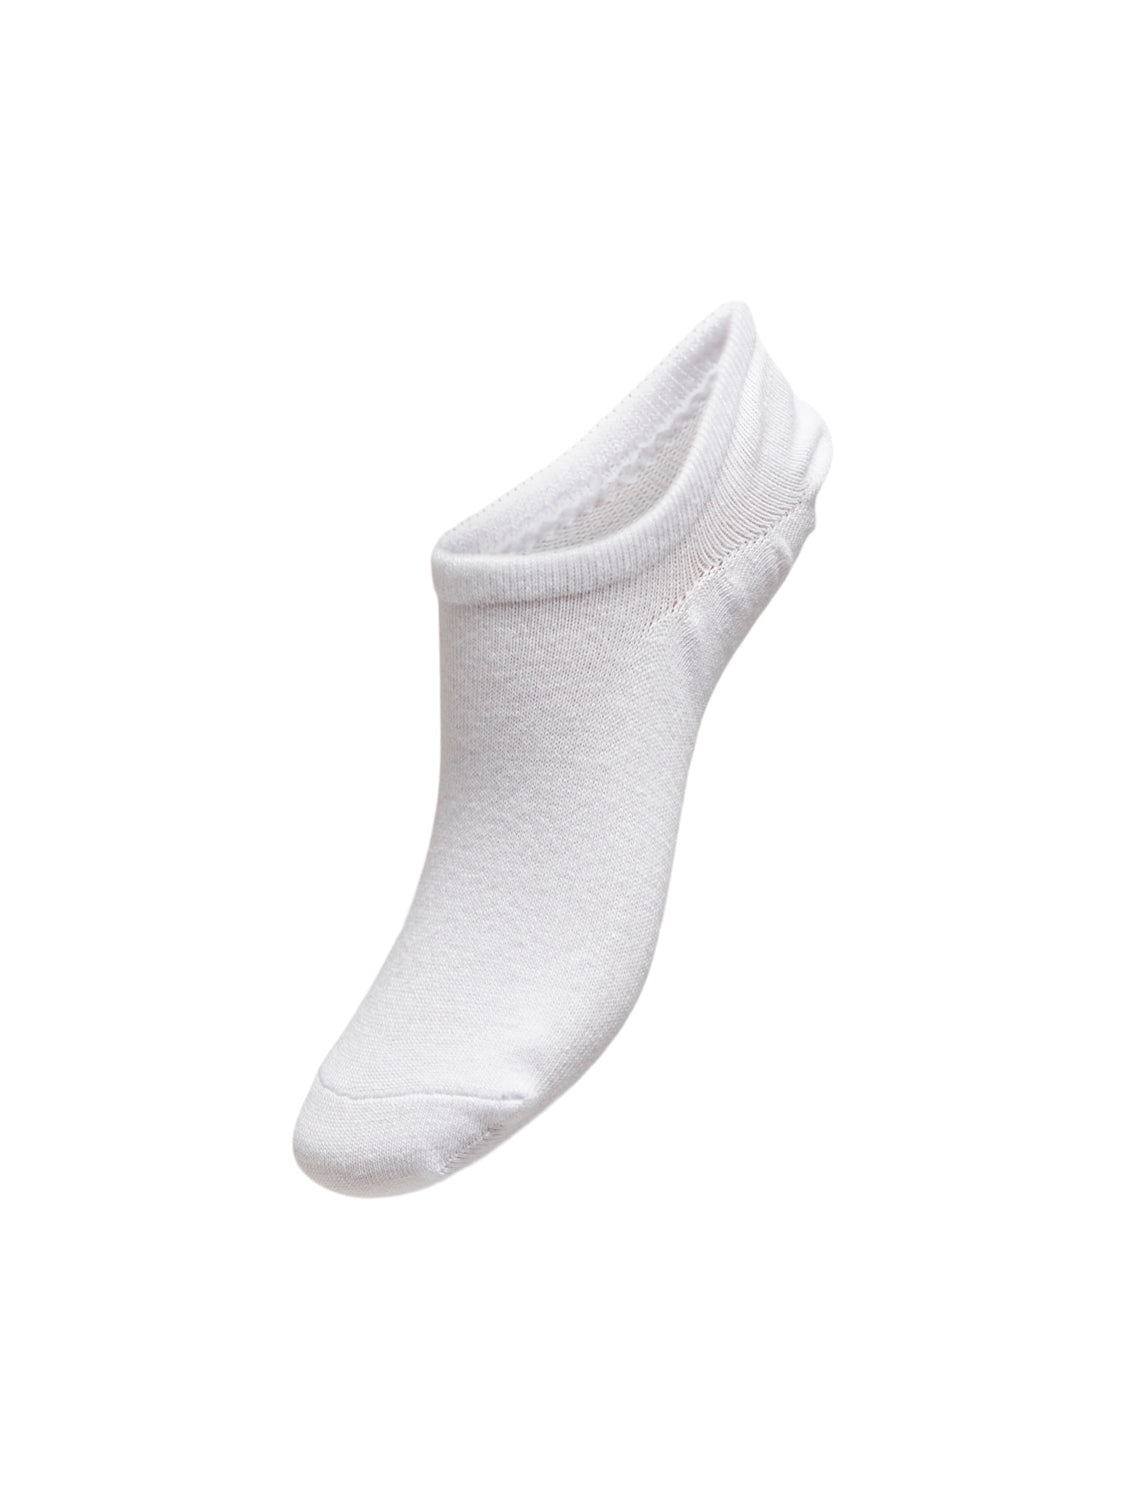 PGEMILY Socks - White